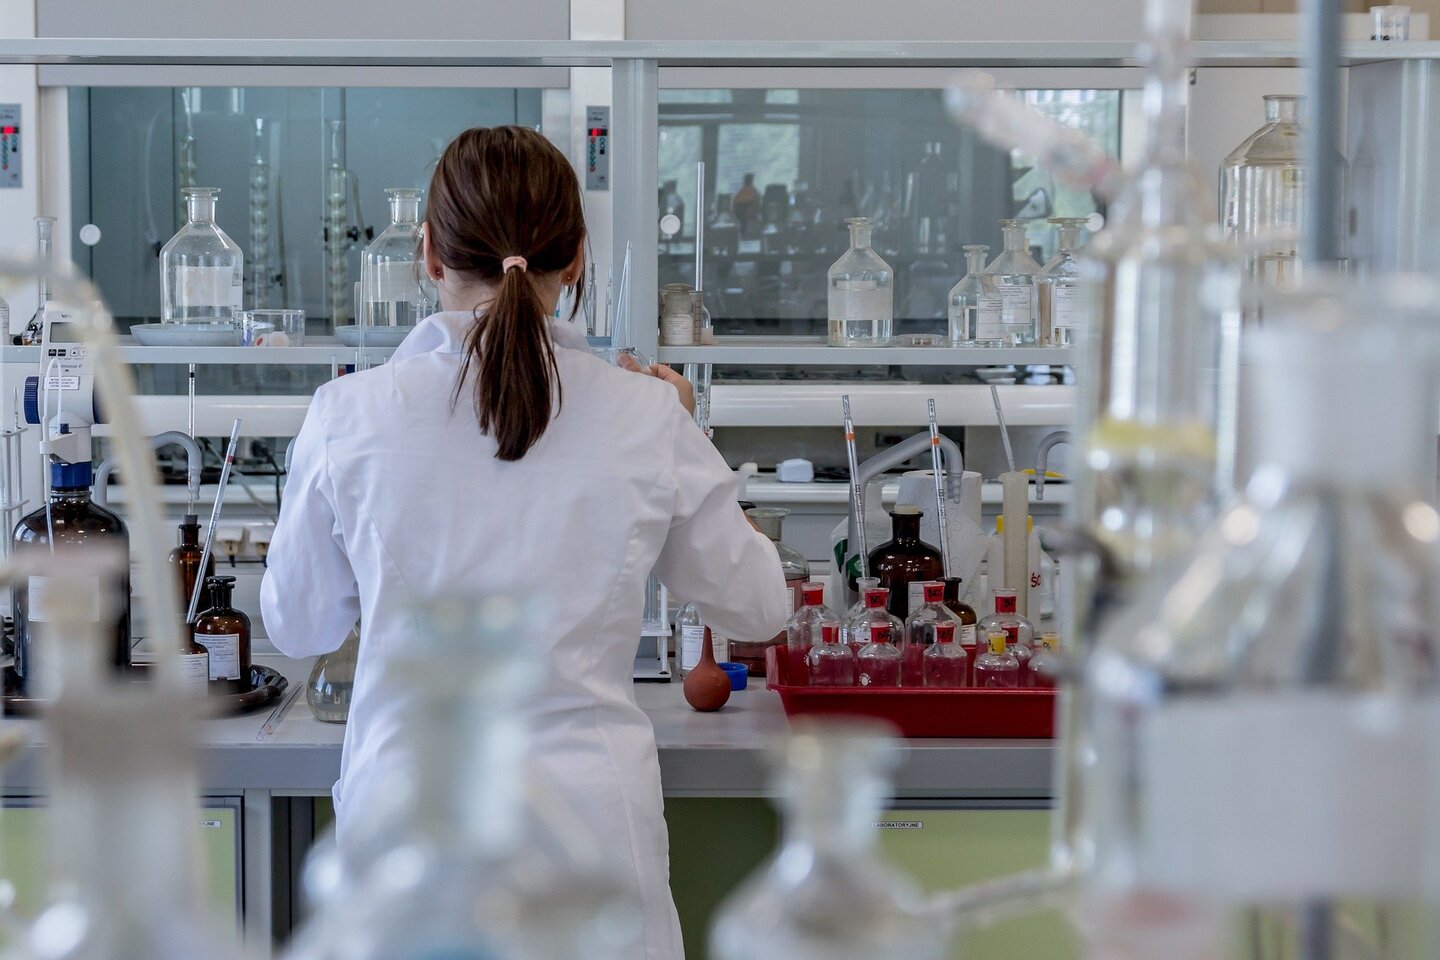 vrouw in een laboratorium met alleen verschillende glazen flessen naast haar